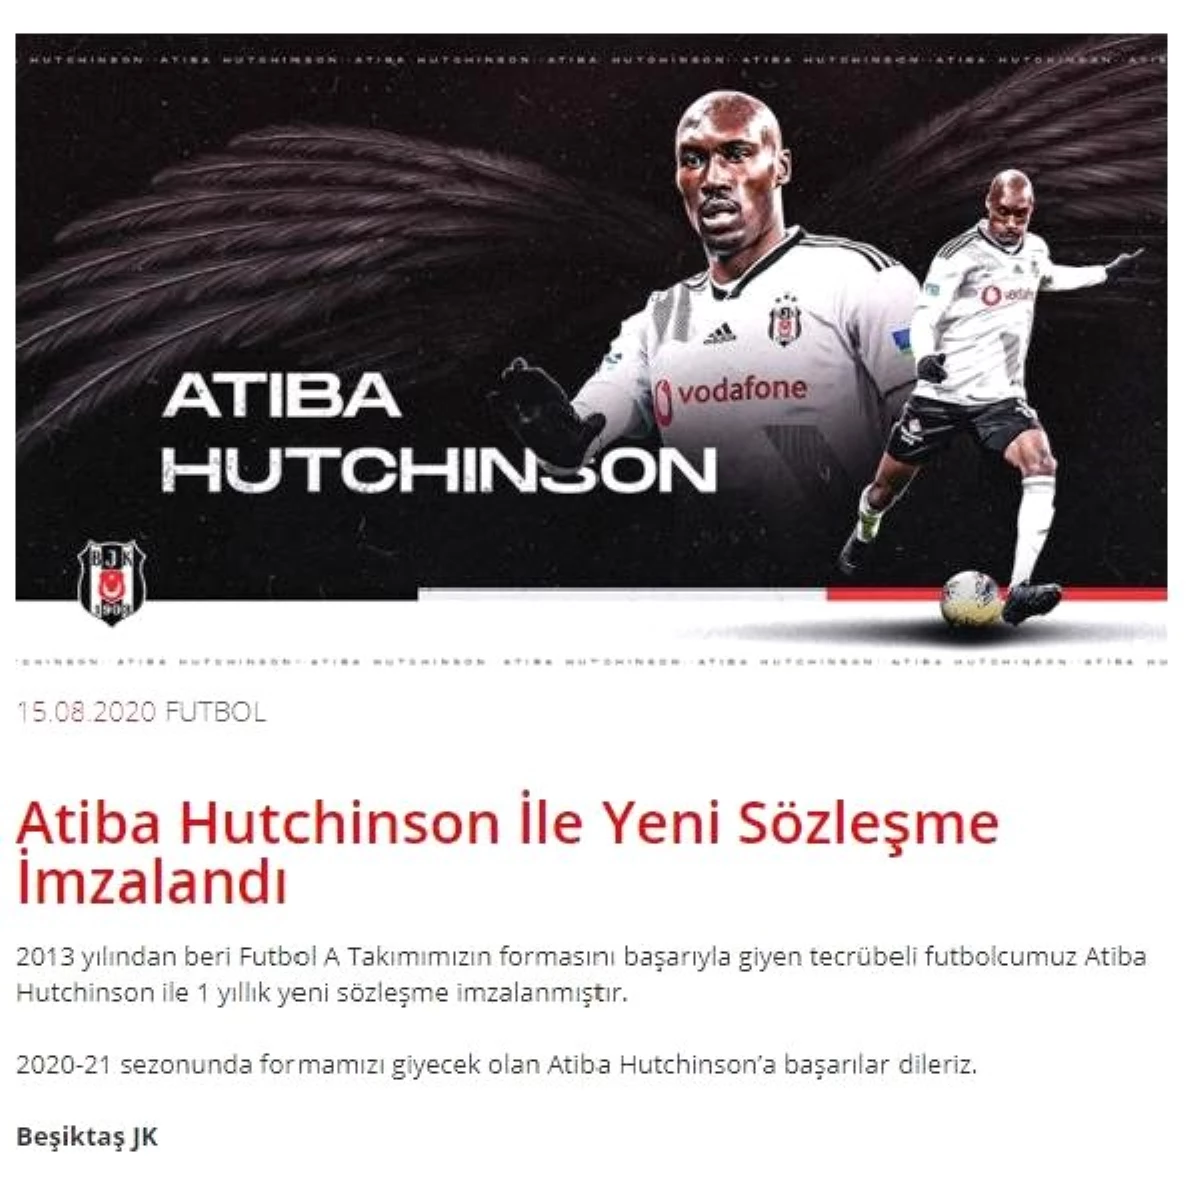 Beşiktaş, Atiba ile sözleşme yenilendiğini açıkladı